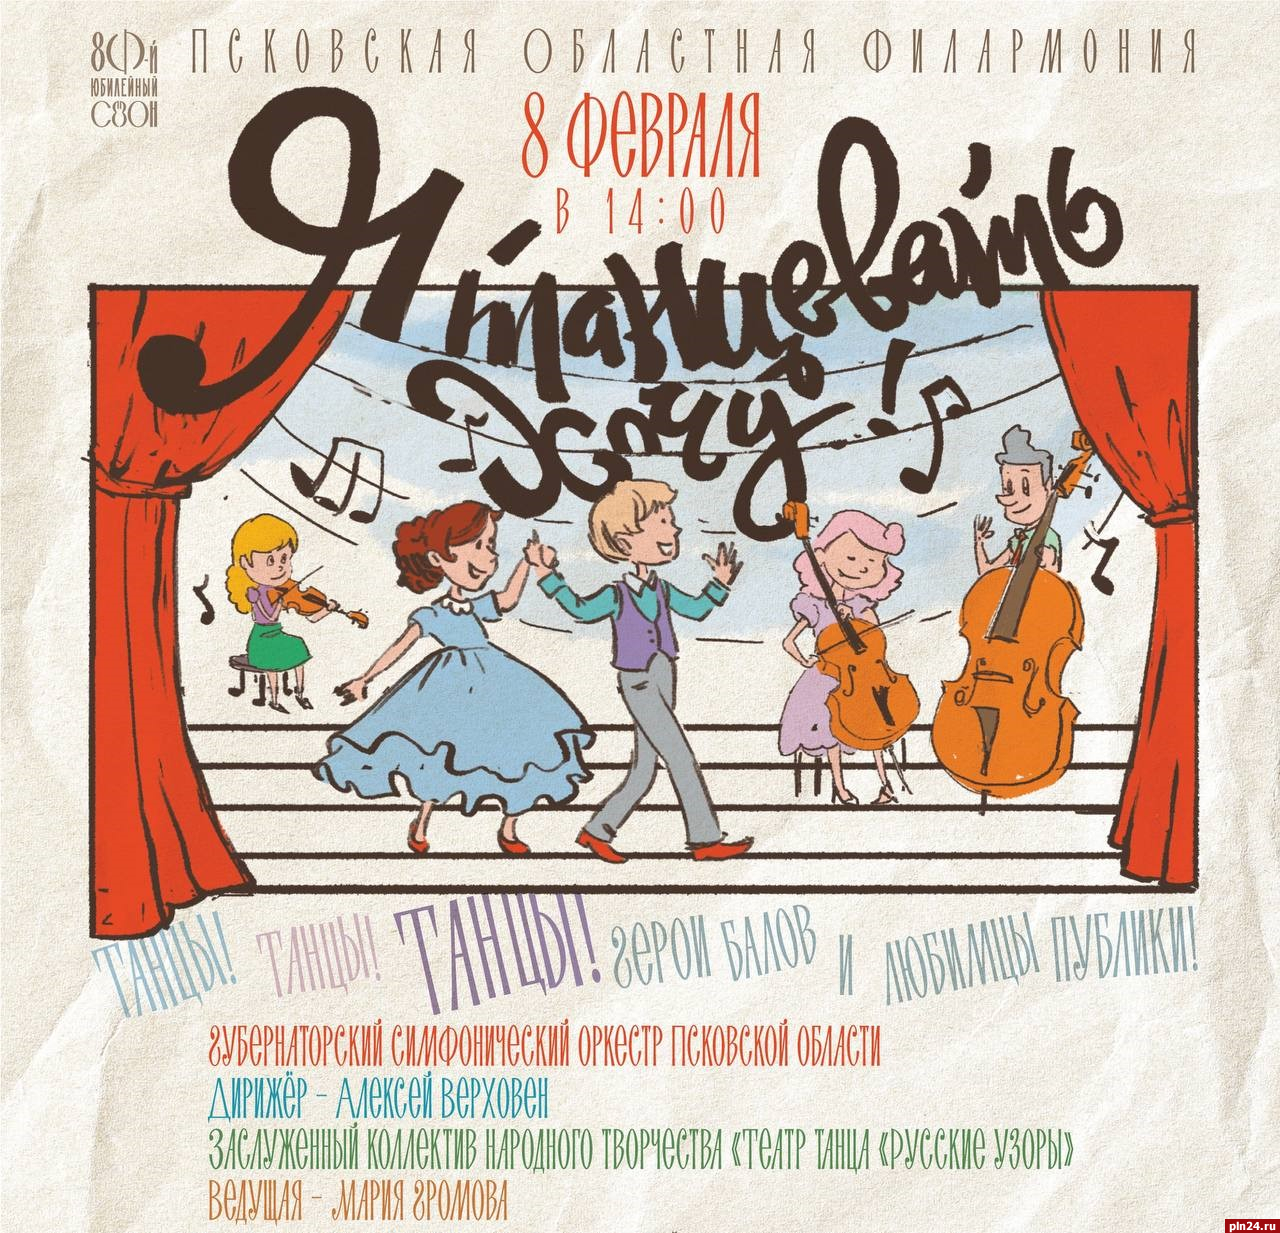 Детскую программу с оркестром организуют в псковской филармонии 8 февраля